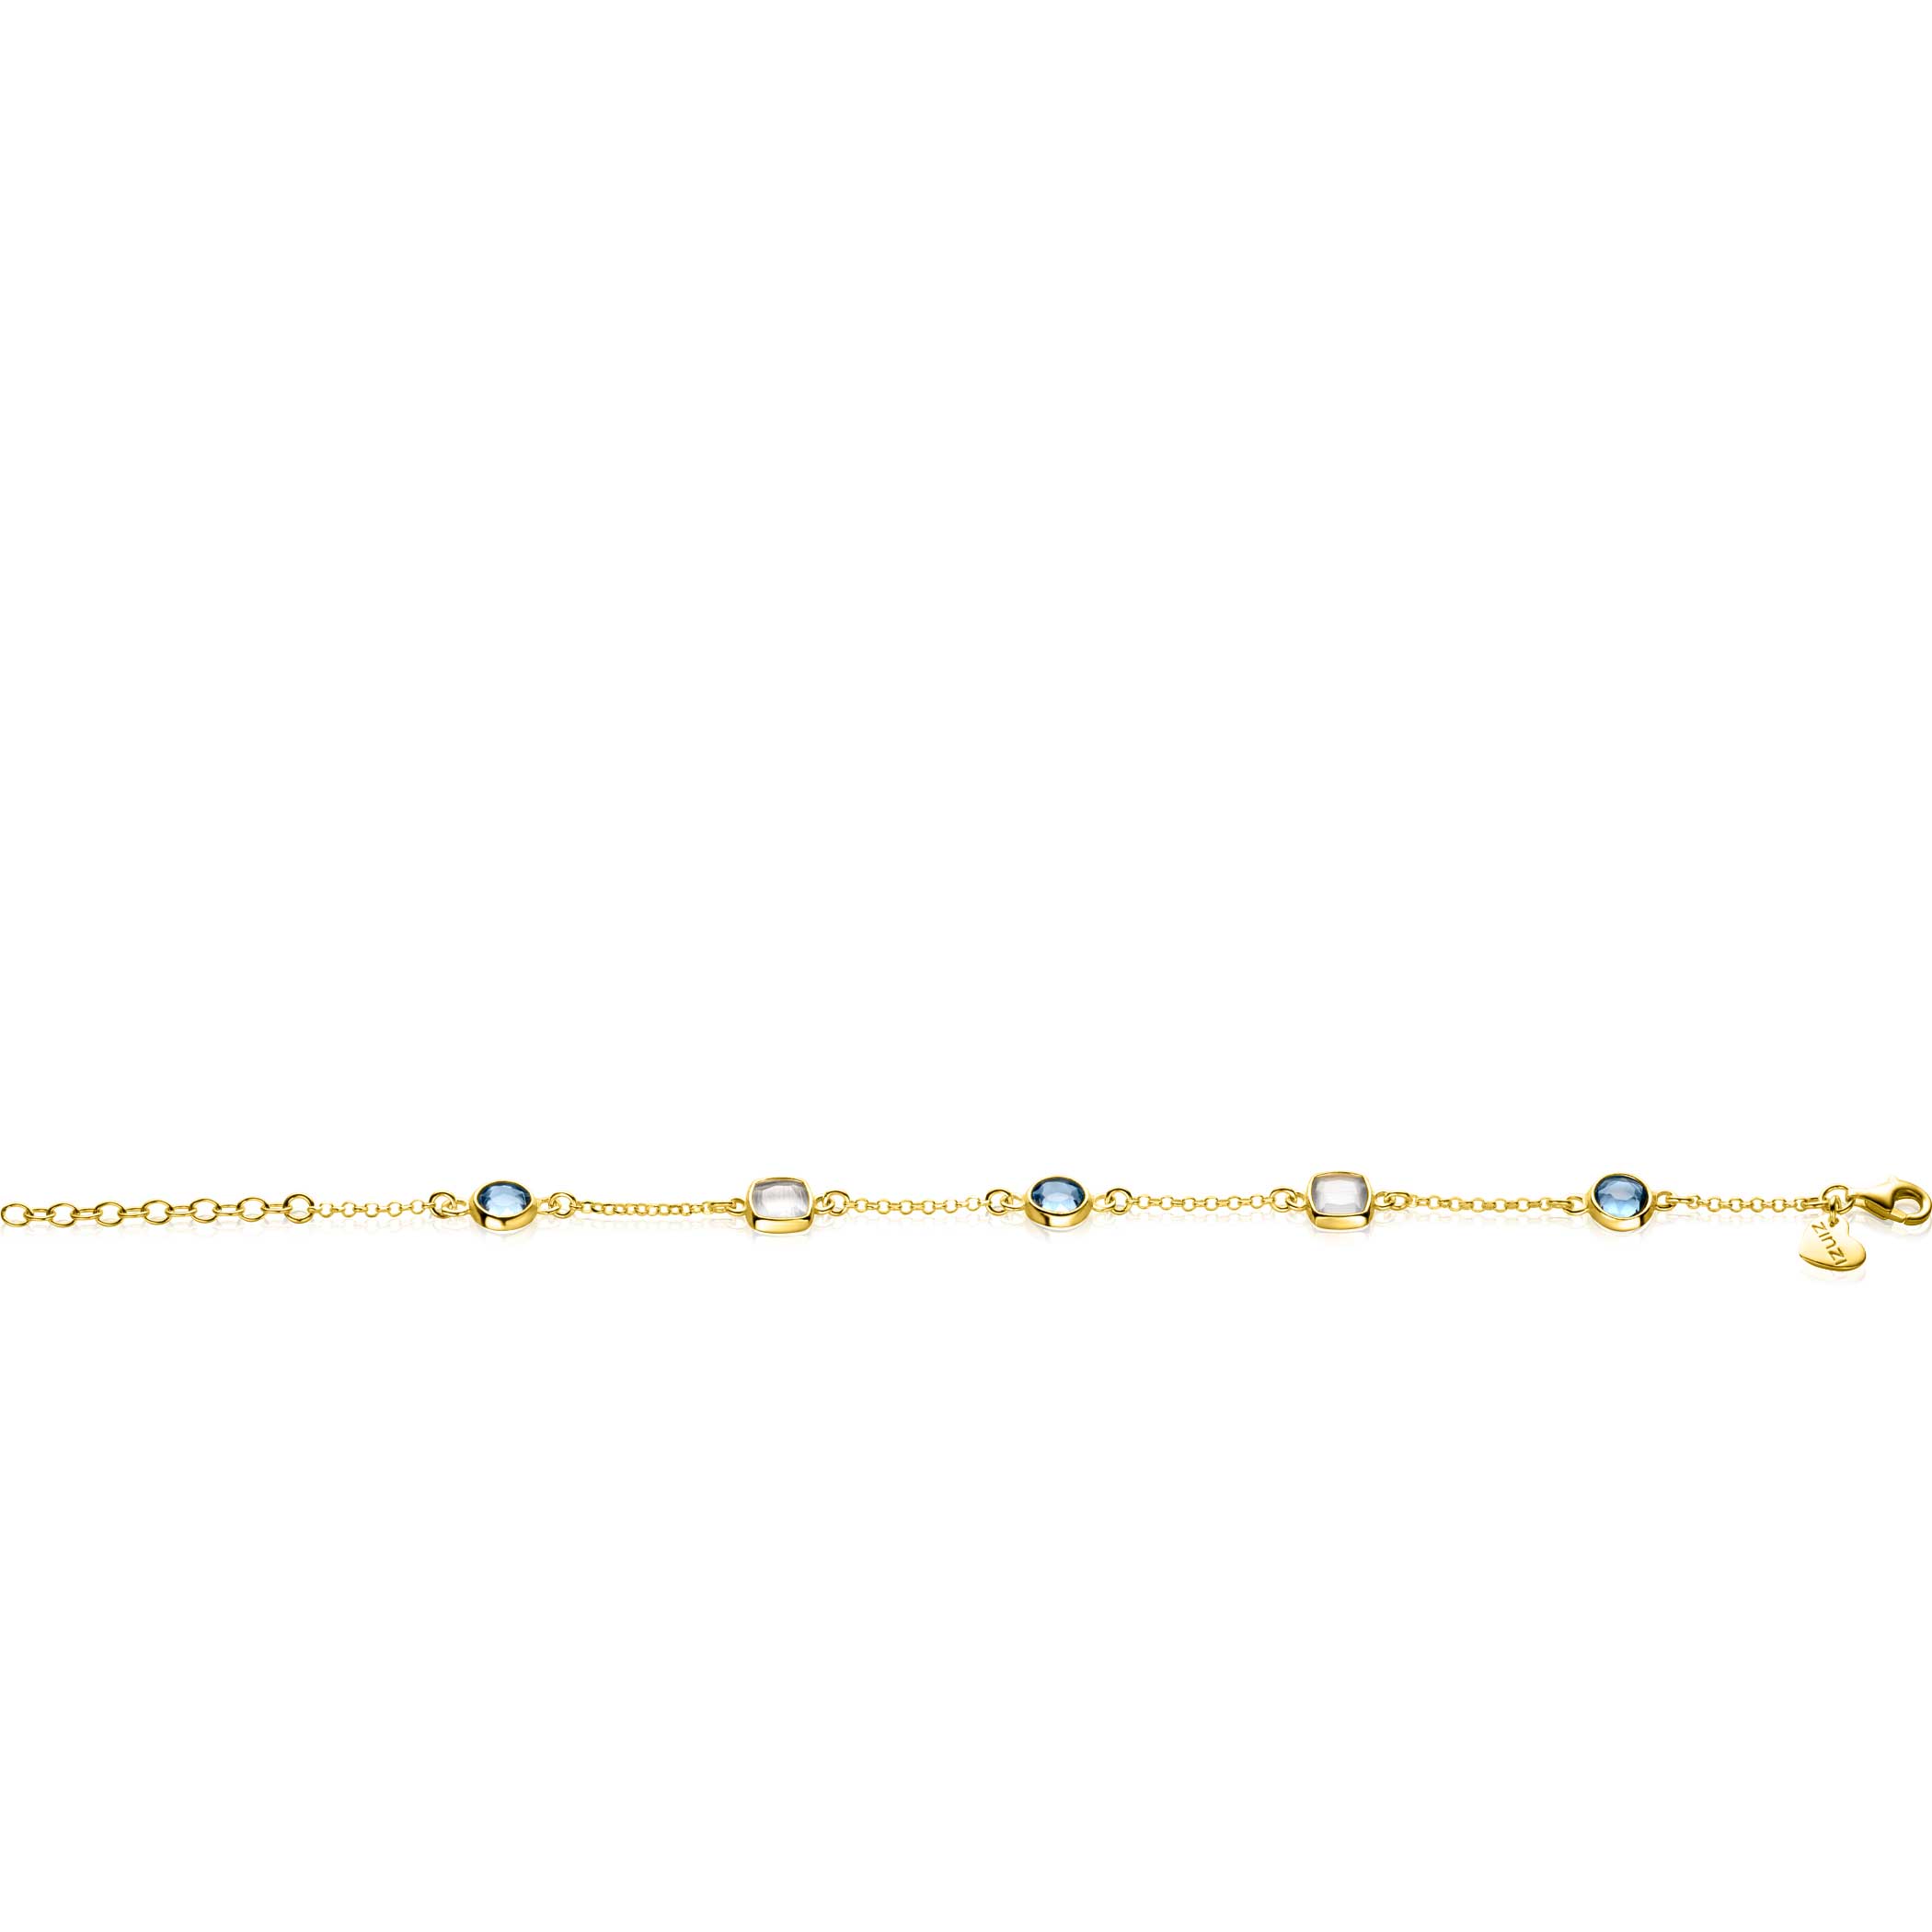 ZINZI gold plated zilveren armband met ronde en vierkante zettingen jeansblauw en witgrijs 17-20cm ZIA2526G